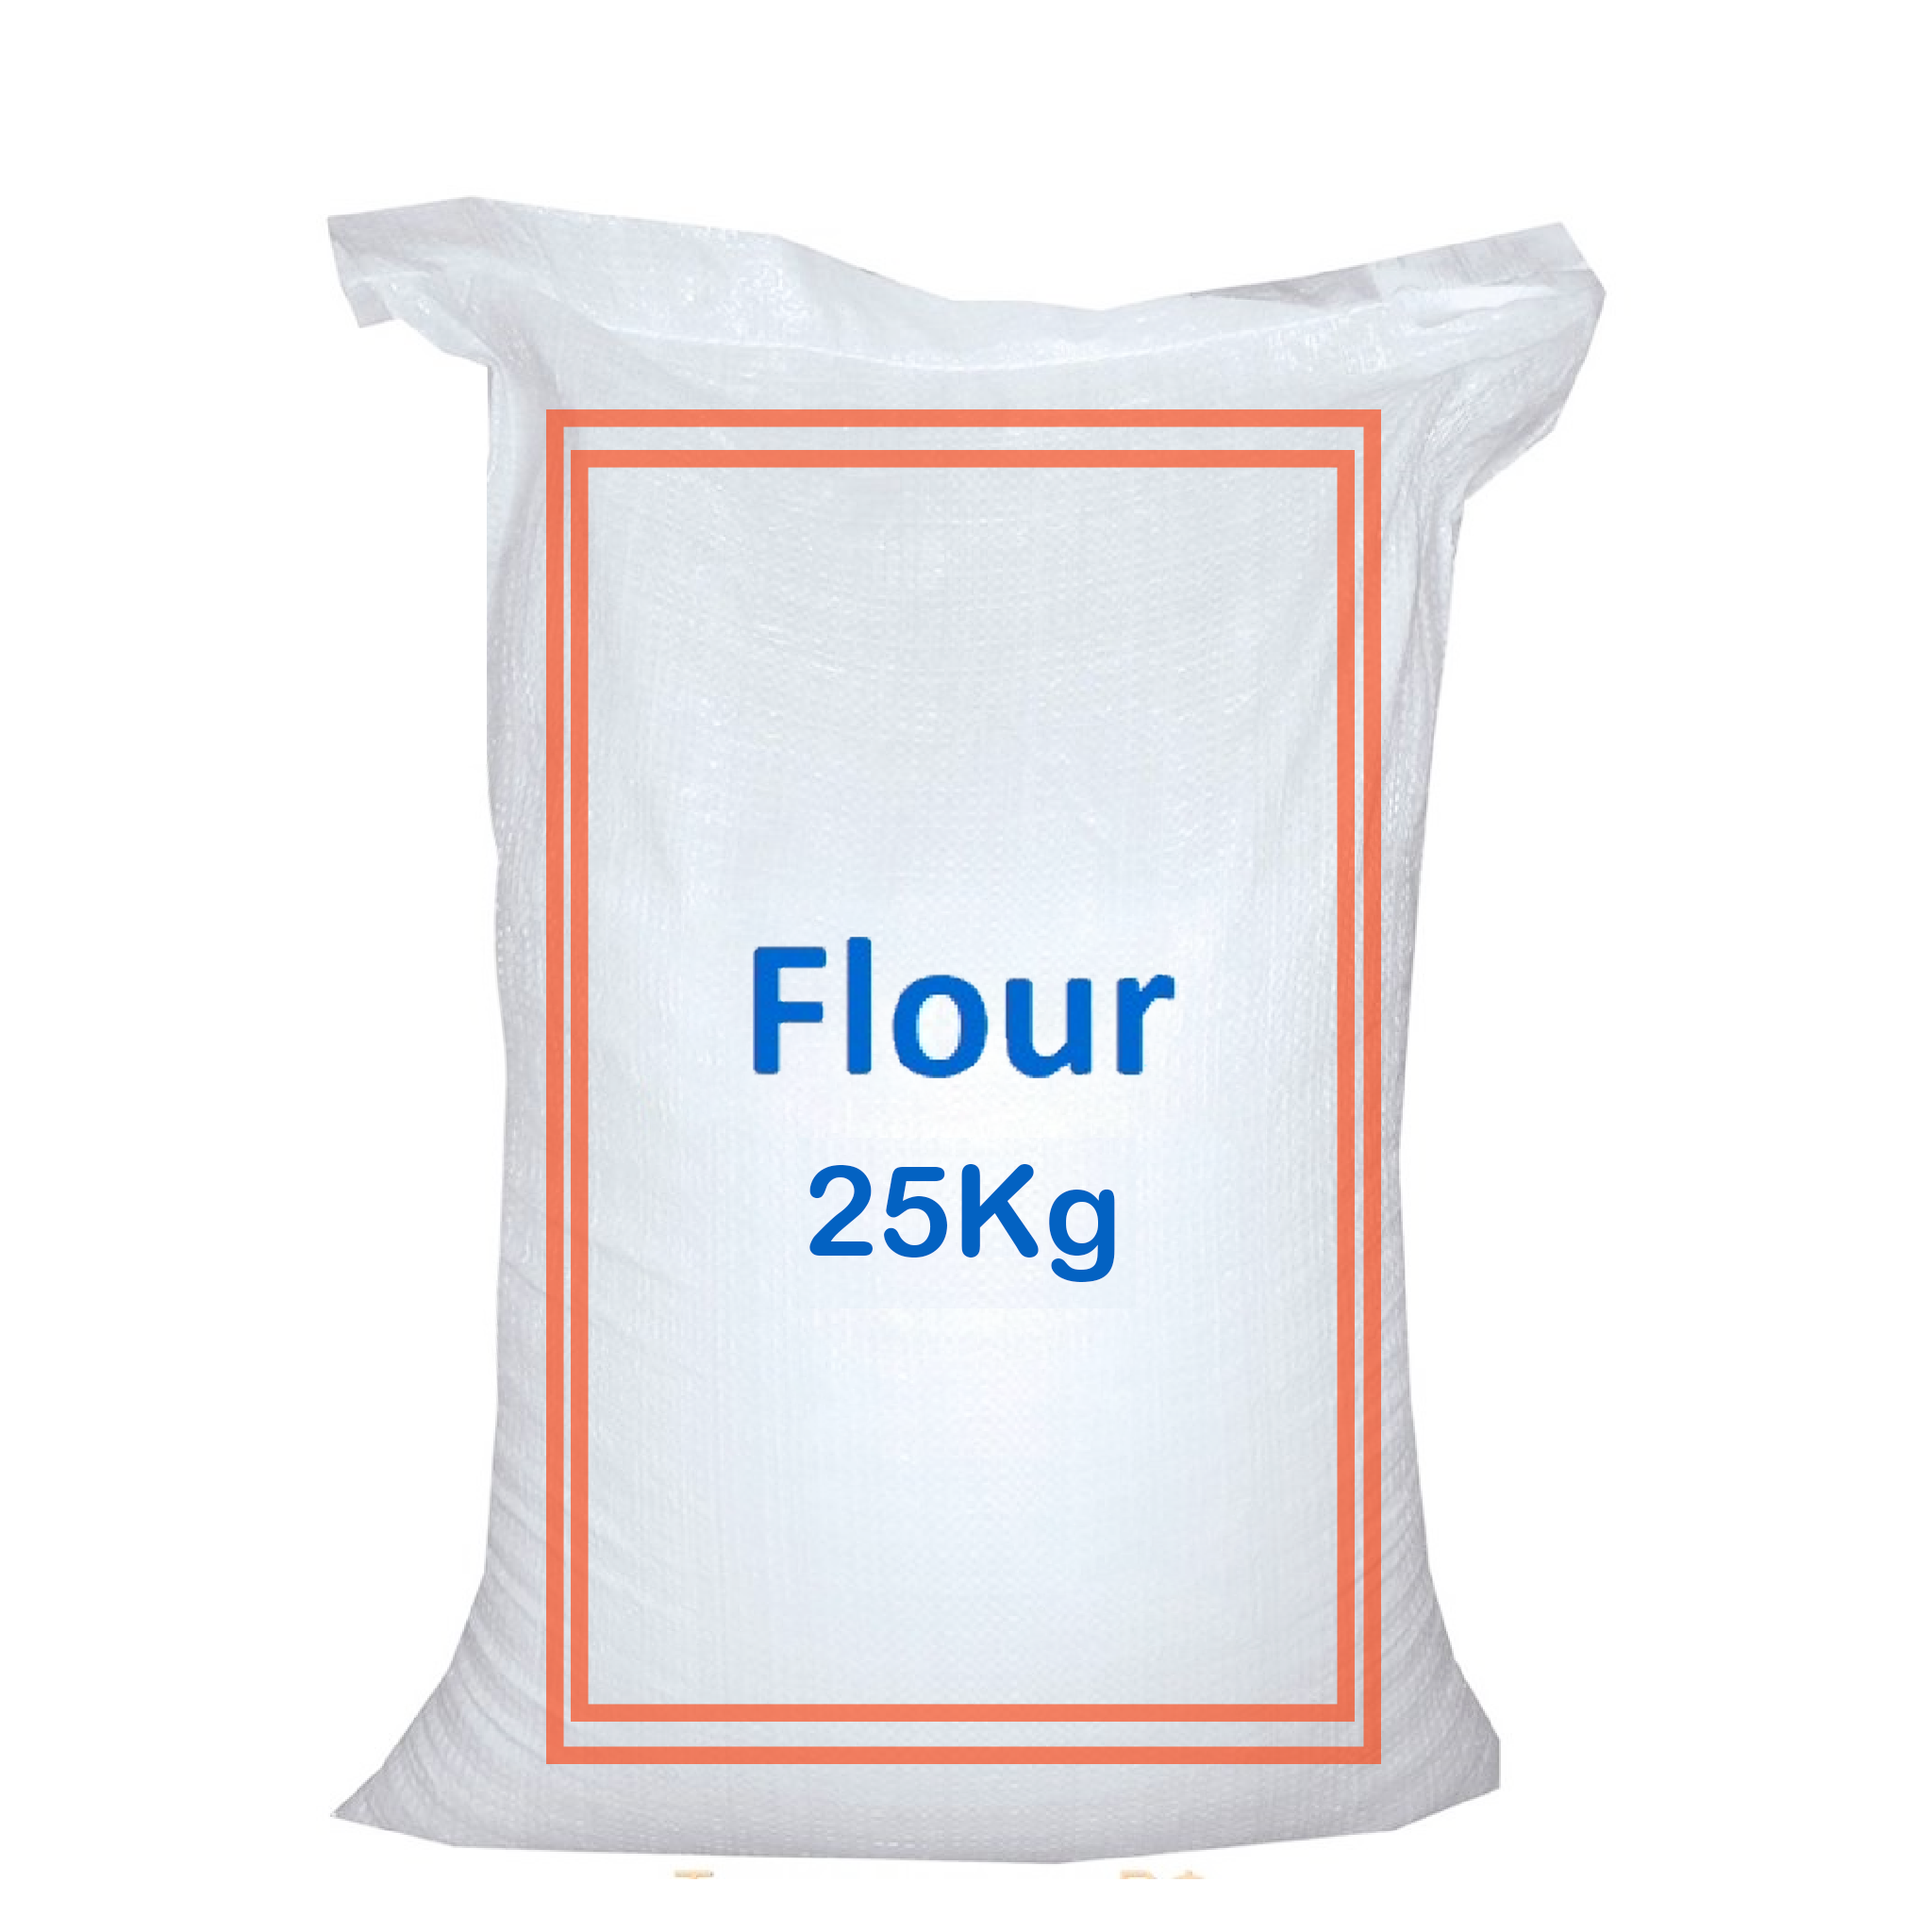 Bur (Flour) 25Kg